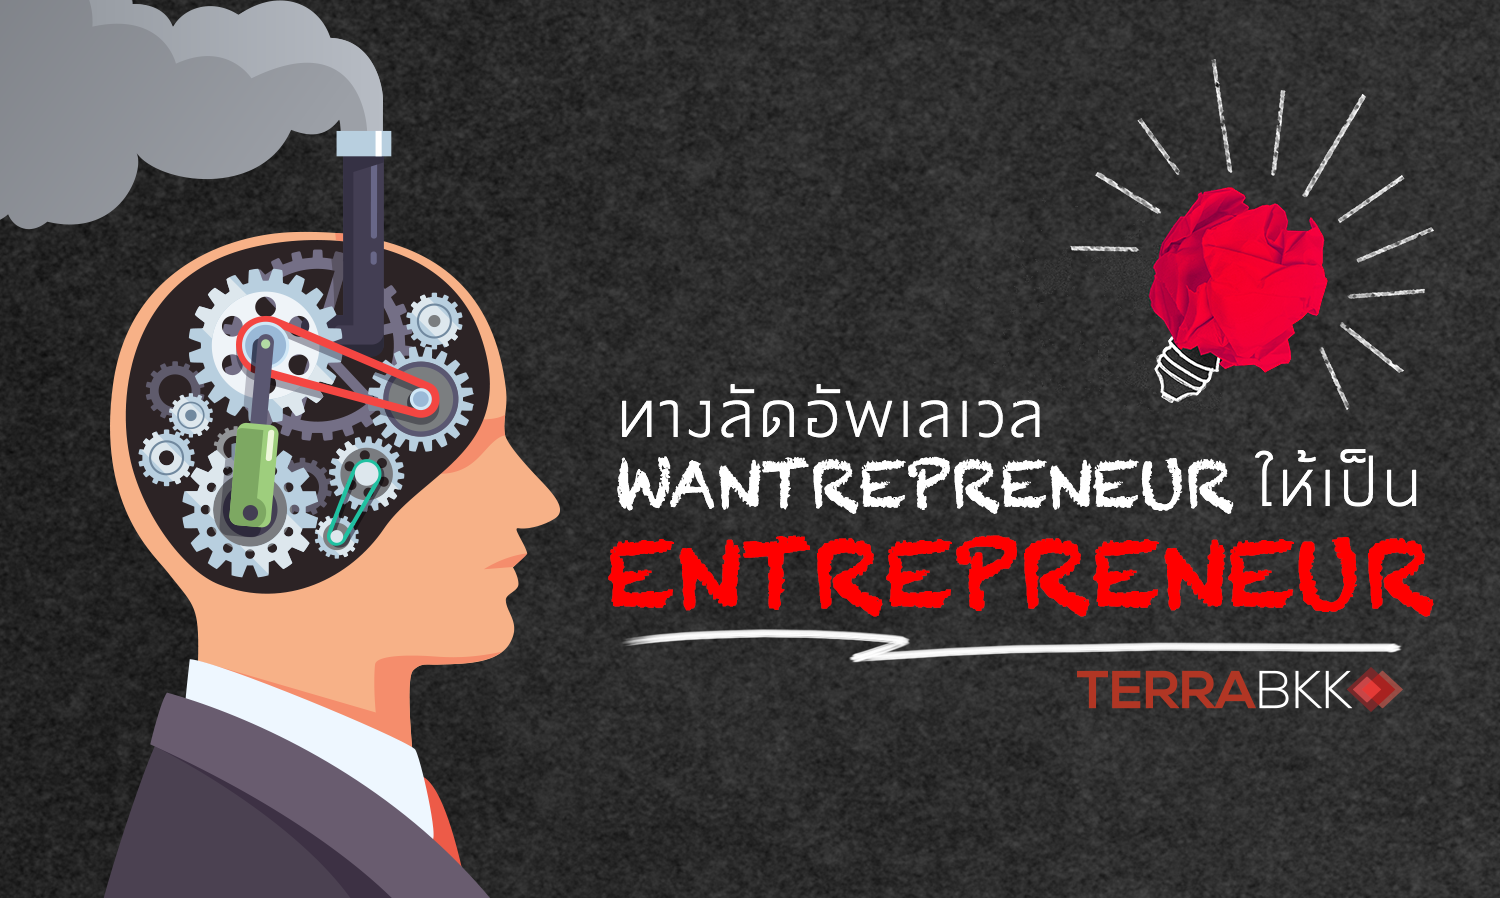 ทางลัดอัพเลเวล Wantrepreneur ให้เป็น Entrepreneur